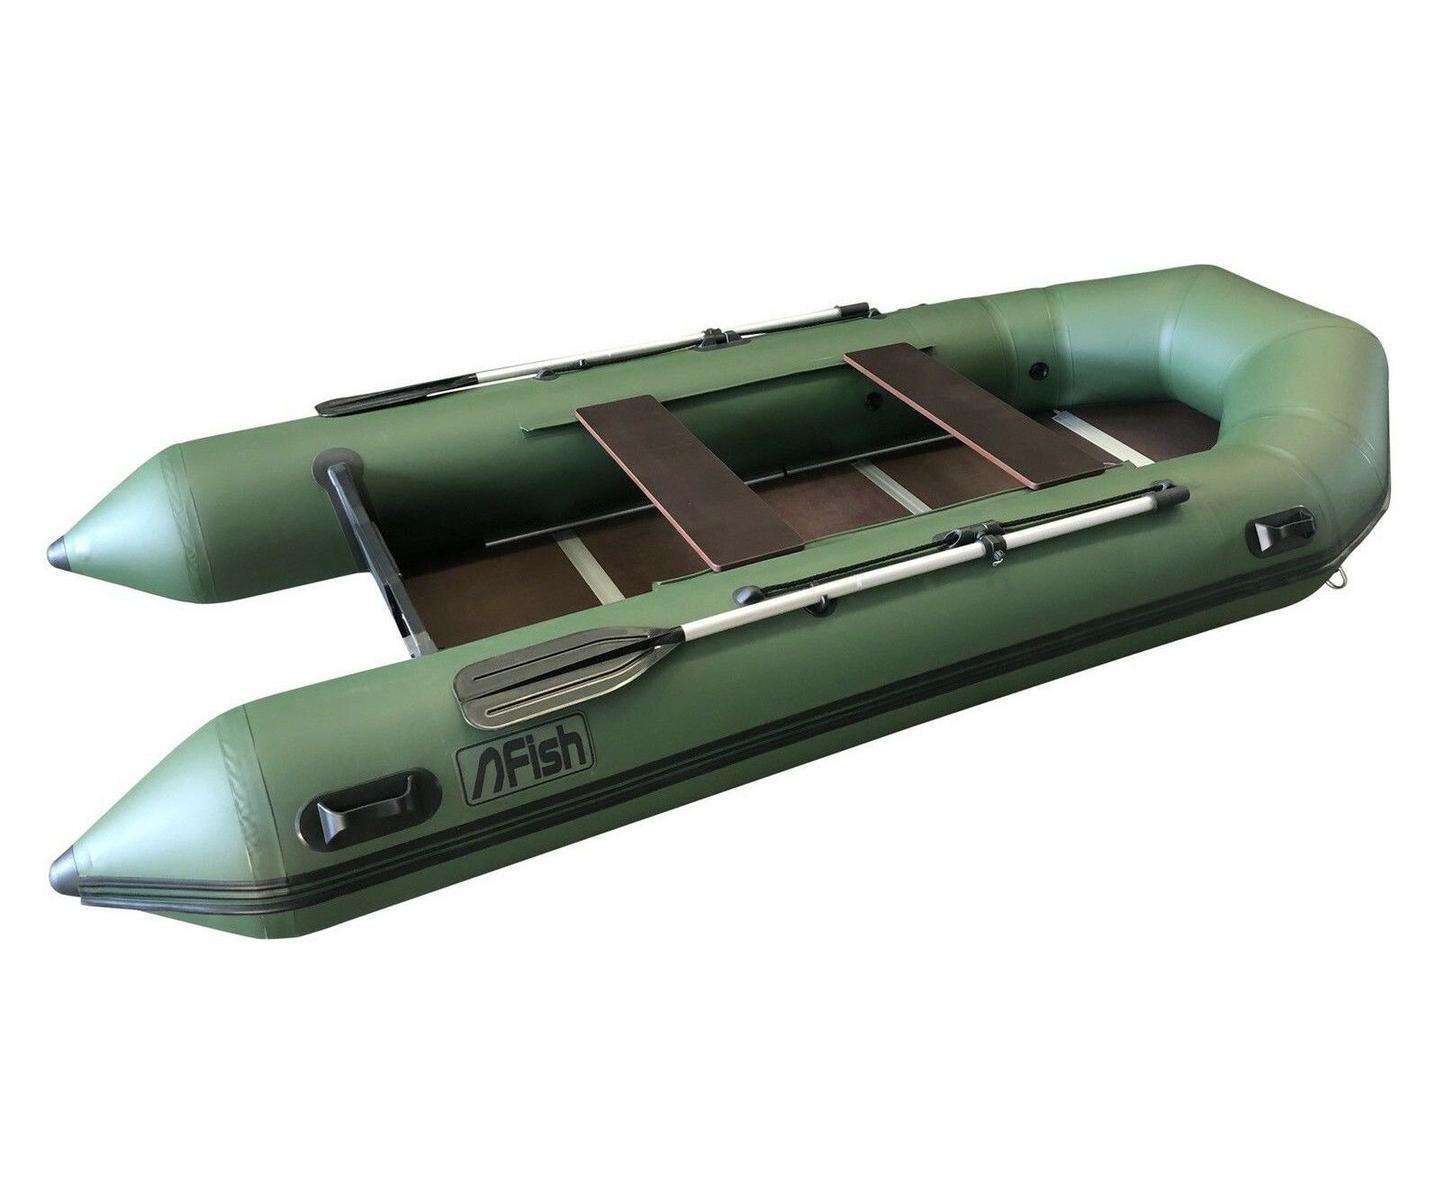 2020 Fish Schlauchboot Angelboot FISH 380 mit Festboden und Luftkiel NEU